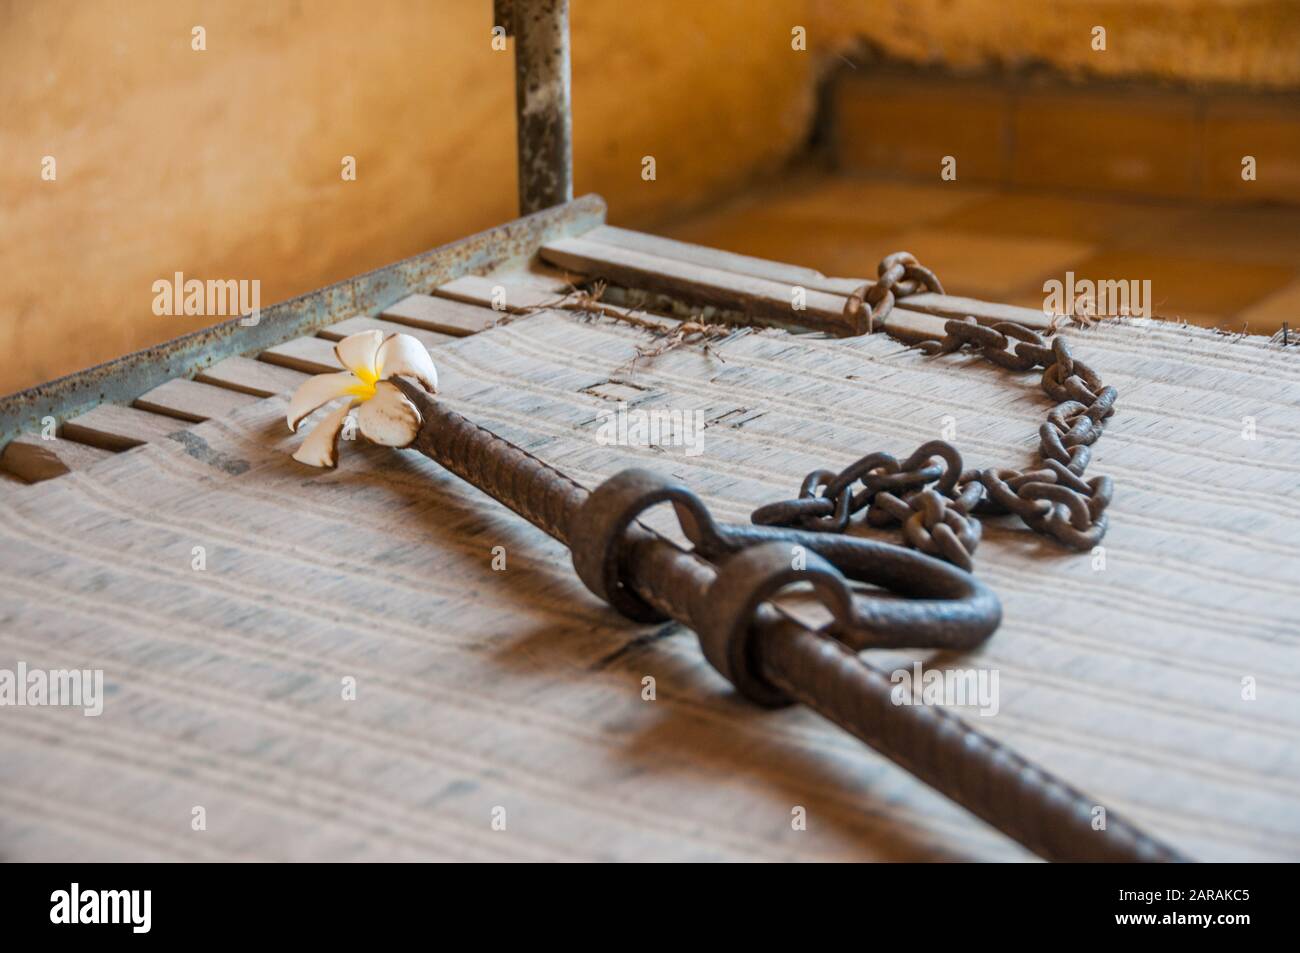 Une manille sur un lit utilisé pour retenir les prisonniers pour les empêcher de s'échapper. Une fleur de frangipani a été placée dessus. Musée Tuol Seng, Phnom Penh, Cambodge Banque D'Images